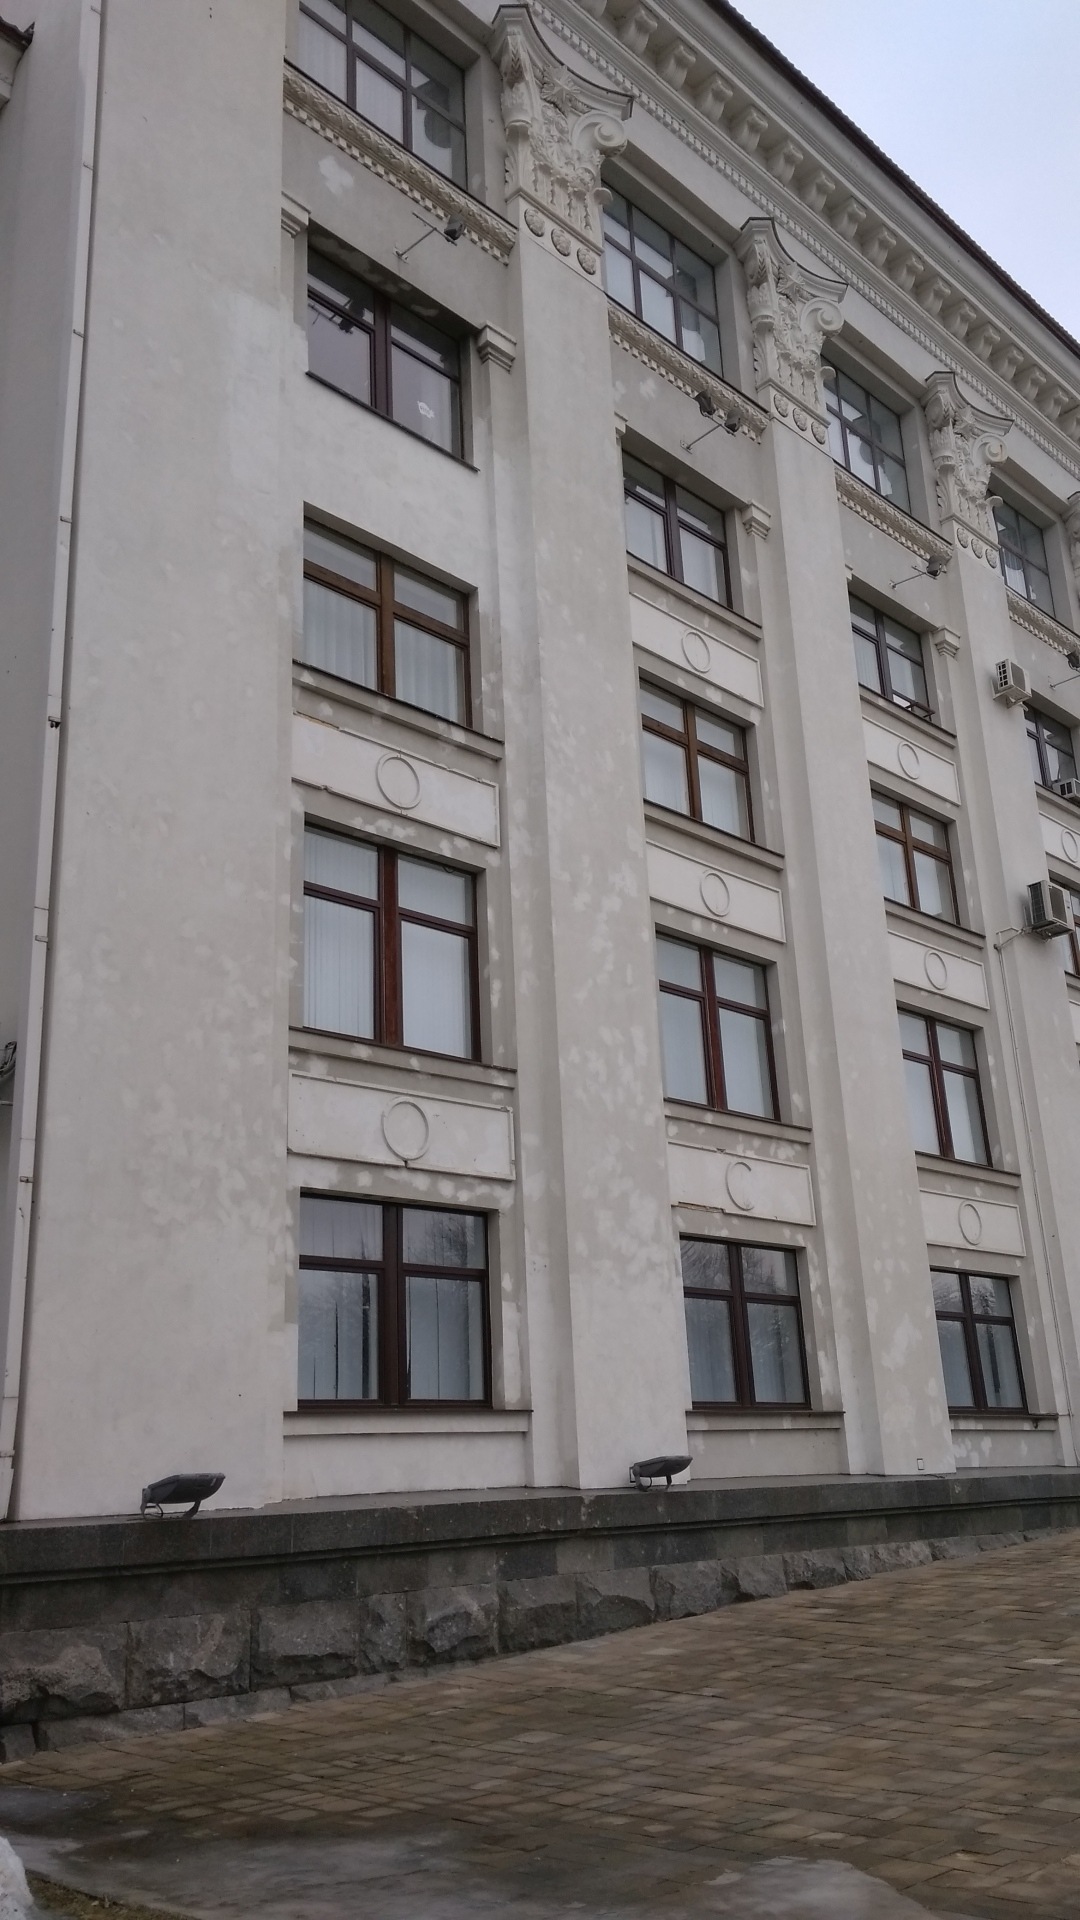 Луганск. Здание администрации. Белые точки следы от ракетного удара